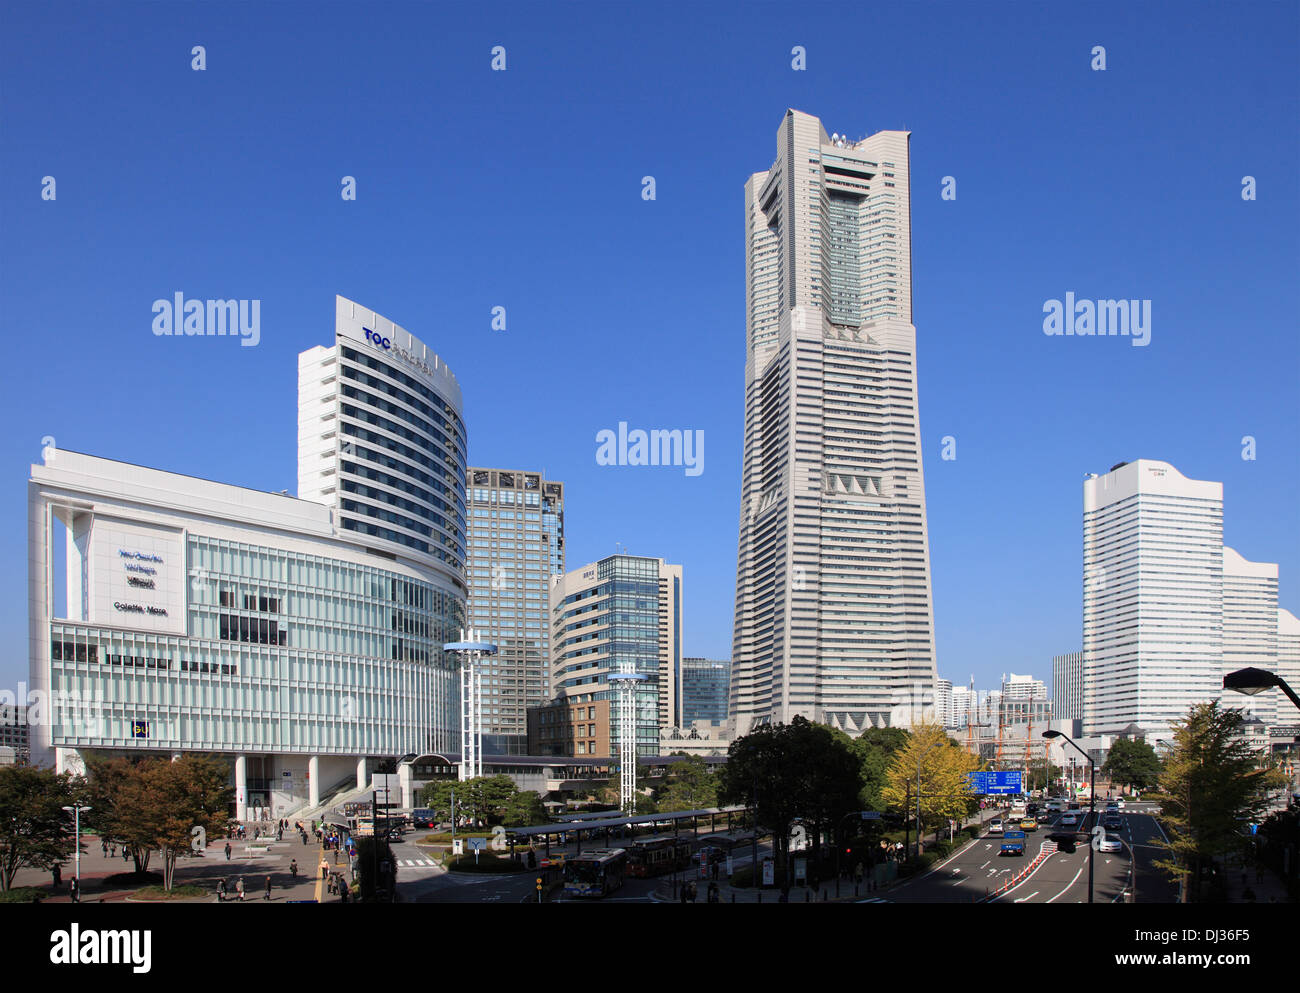 Japan, Yokohama, Minato Mirai, Landmark Tower, Stock Photo